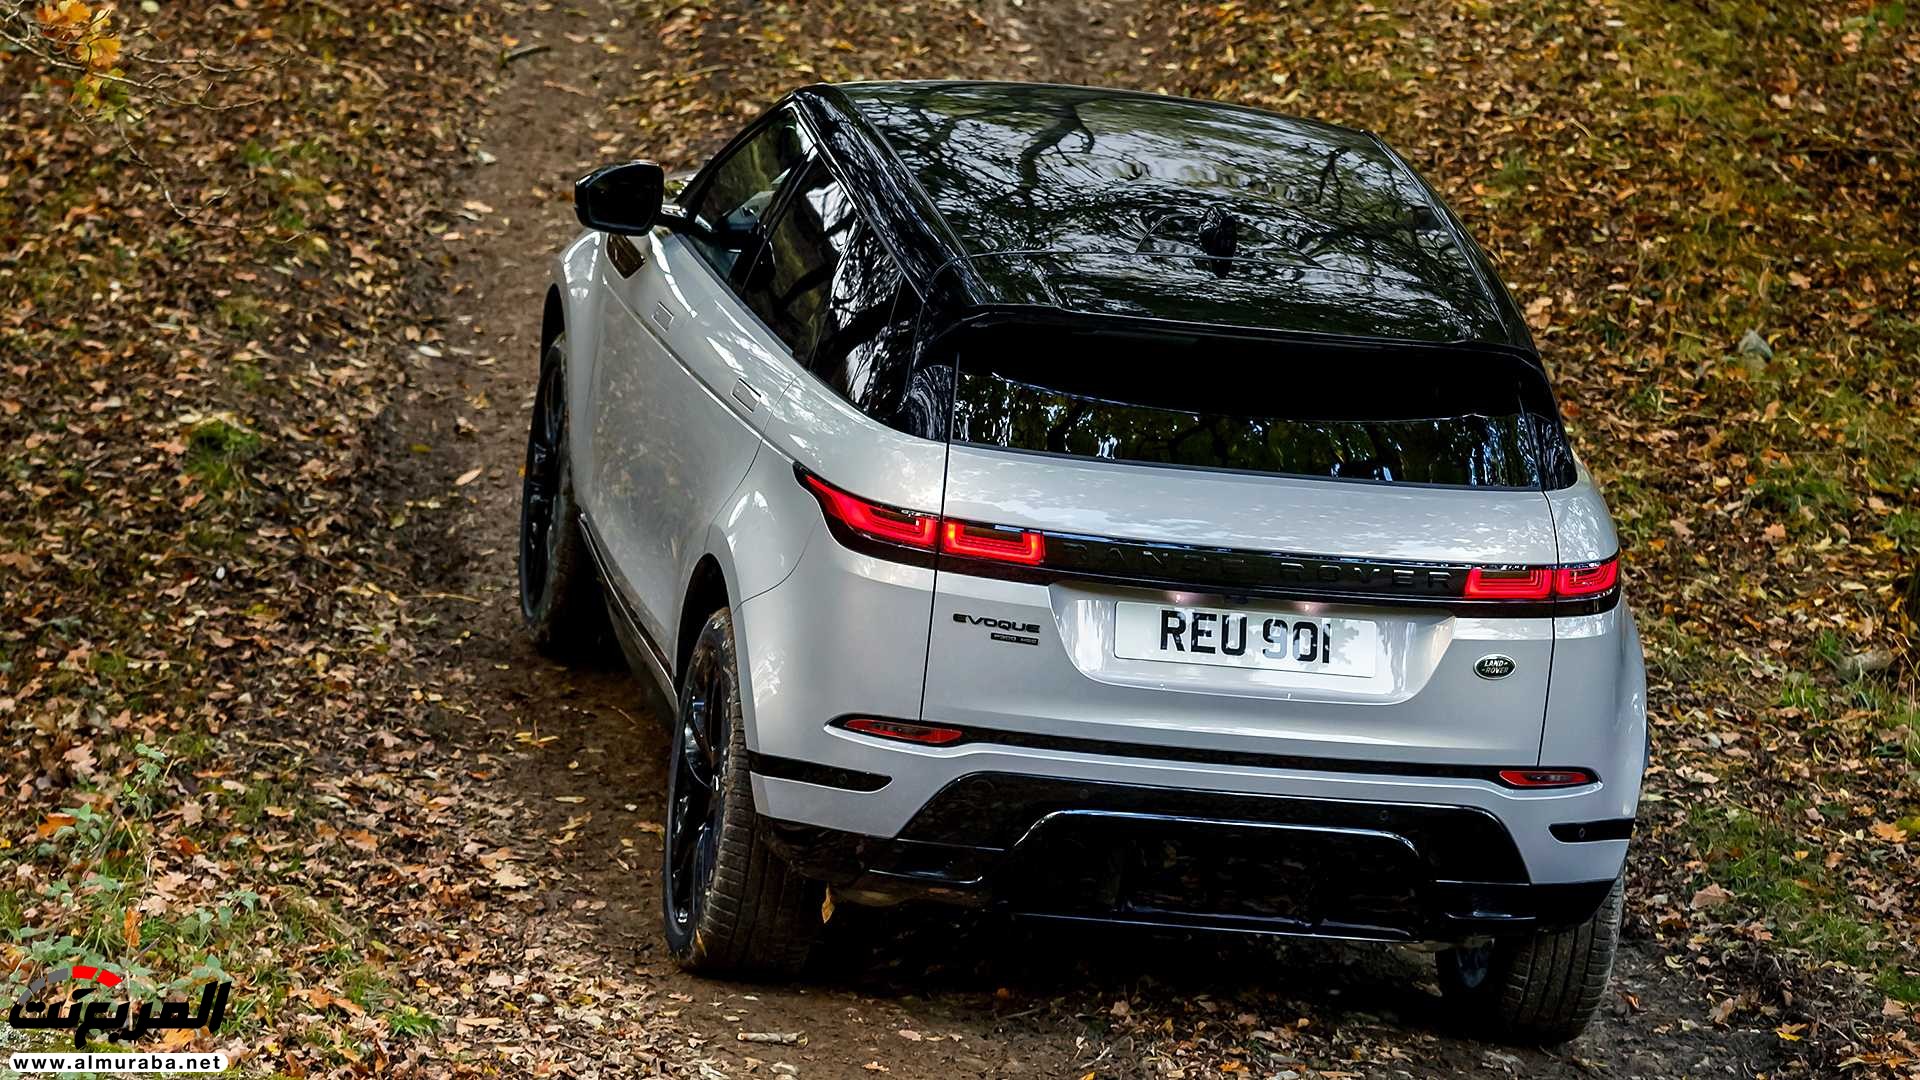 اهم 7 معلومات عن رنج روفر ايفوك 2020 الجديدة كلياً Range Rover Evoque 281